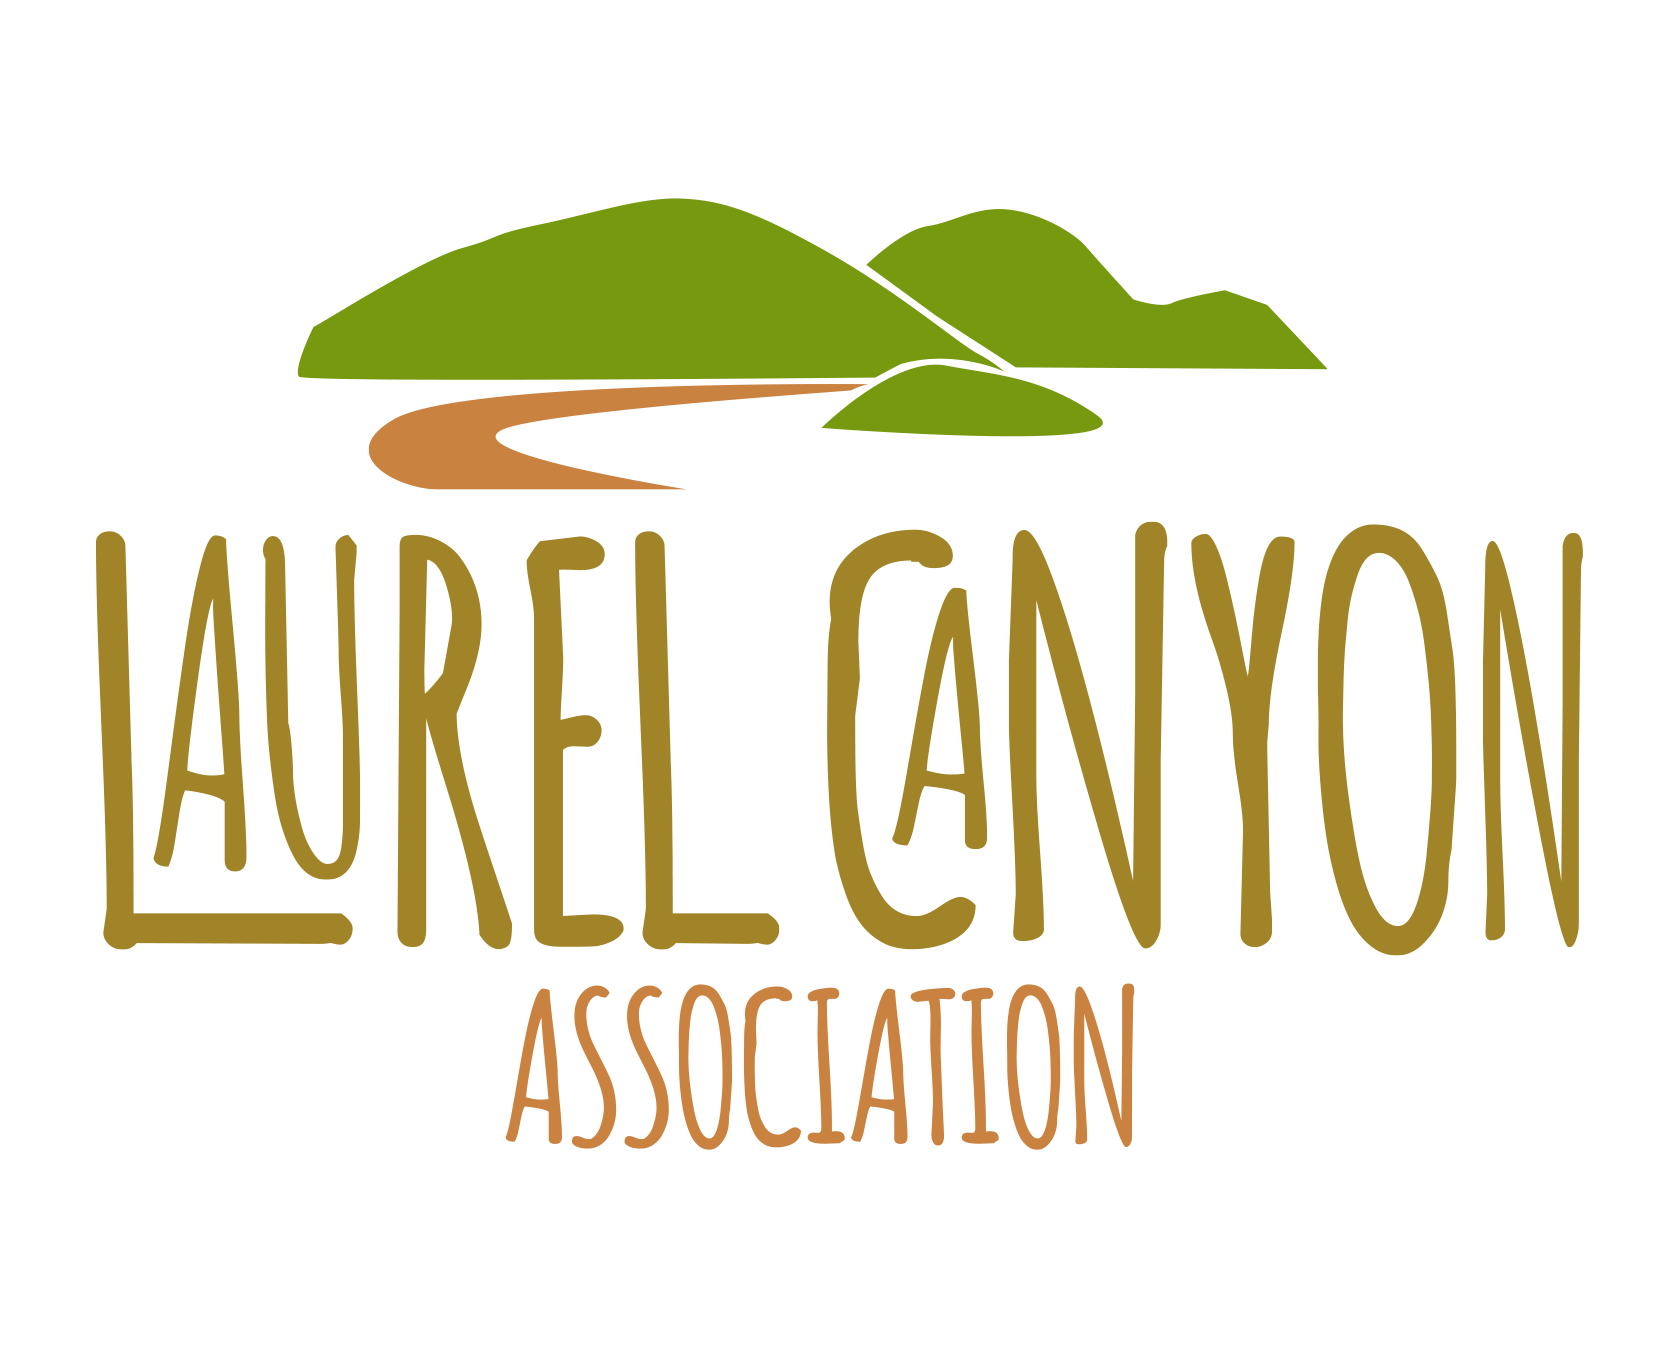 Laurel Canyon Association